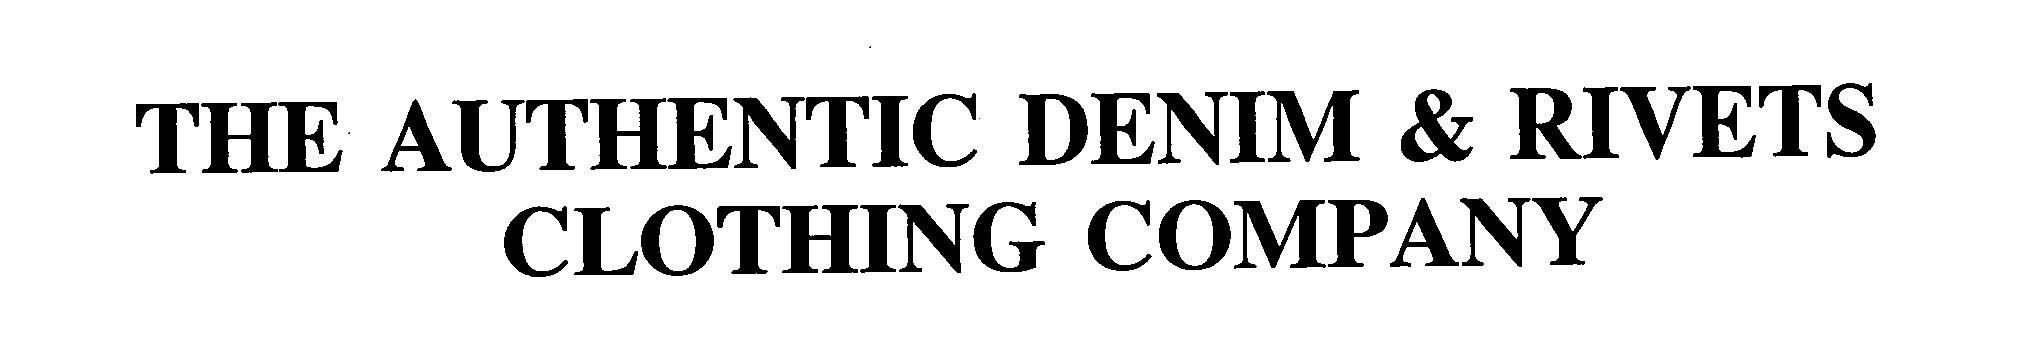 authentic denim company